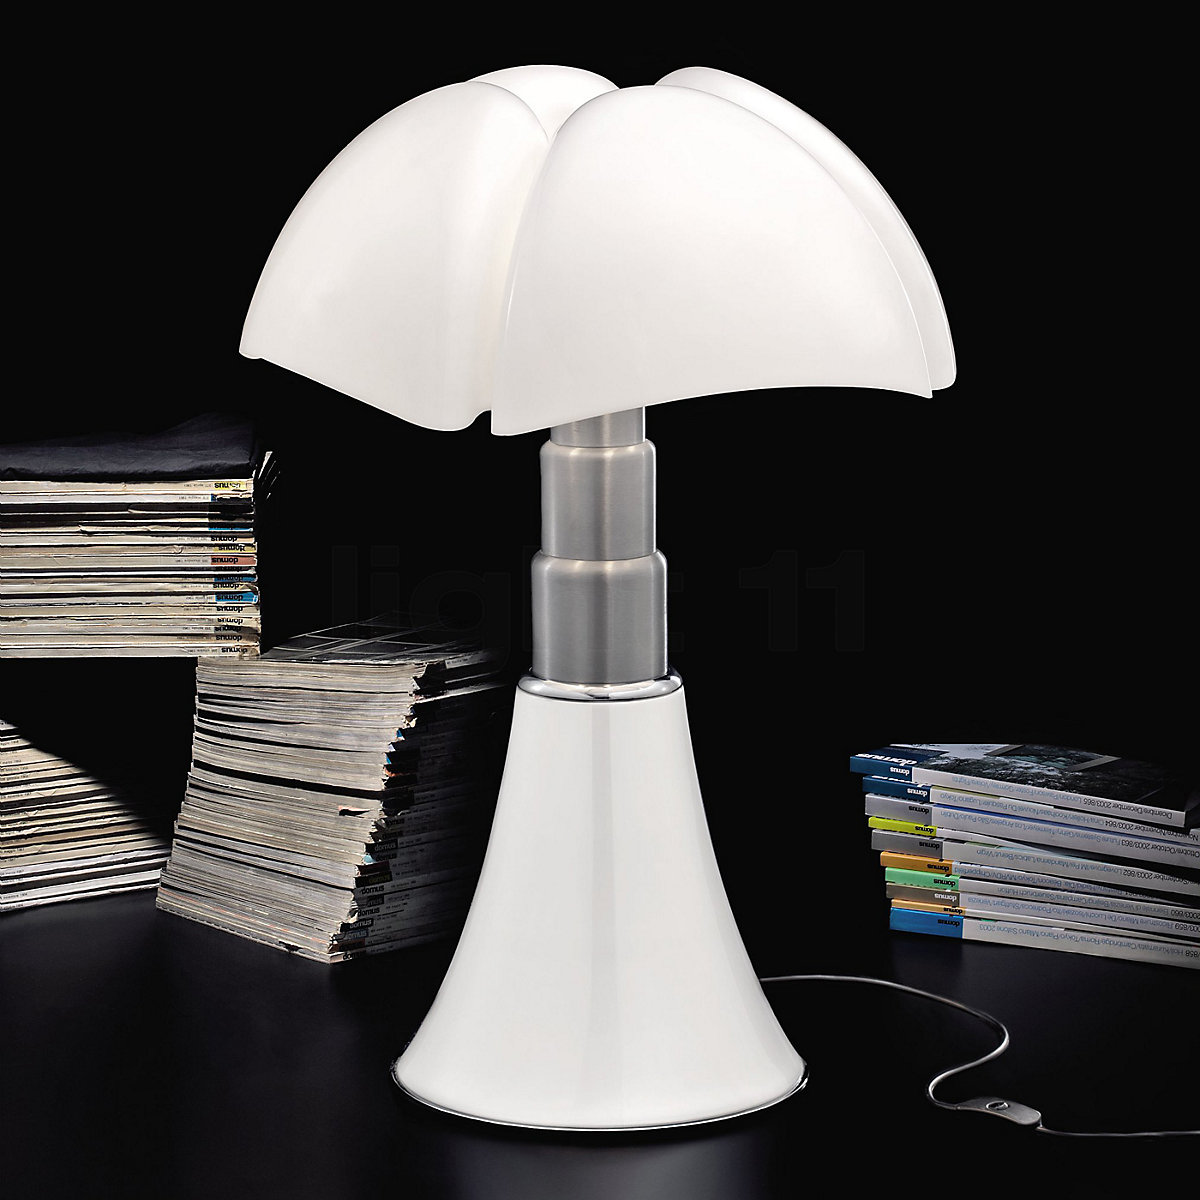 Pipistrello 620 Lampe de table / Lampadaire Martinelli Luce